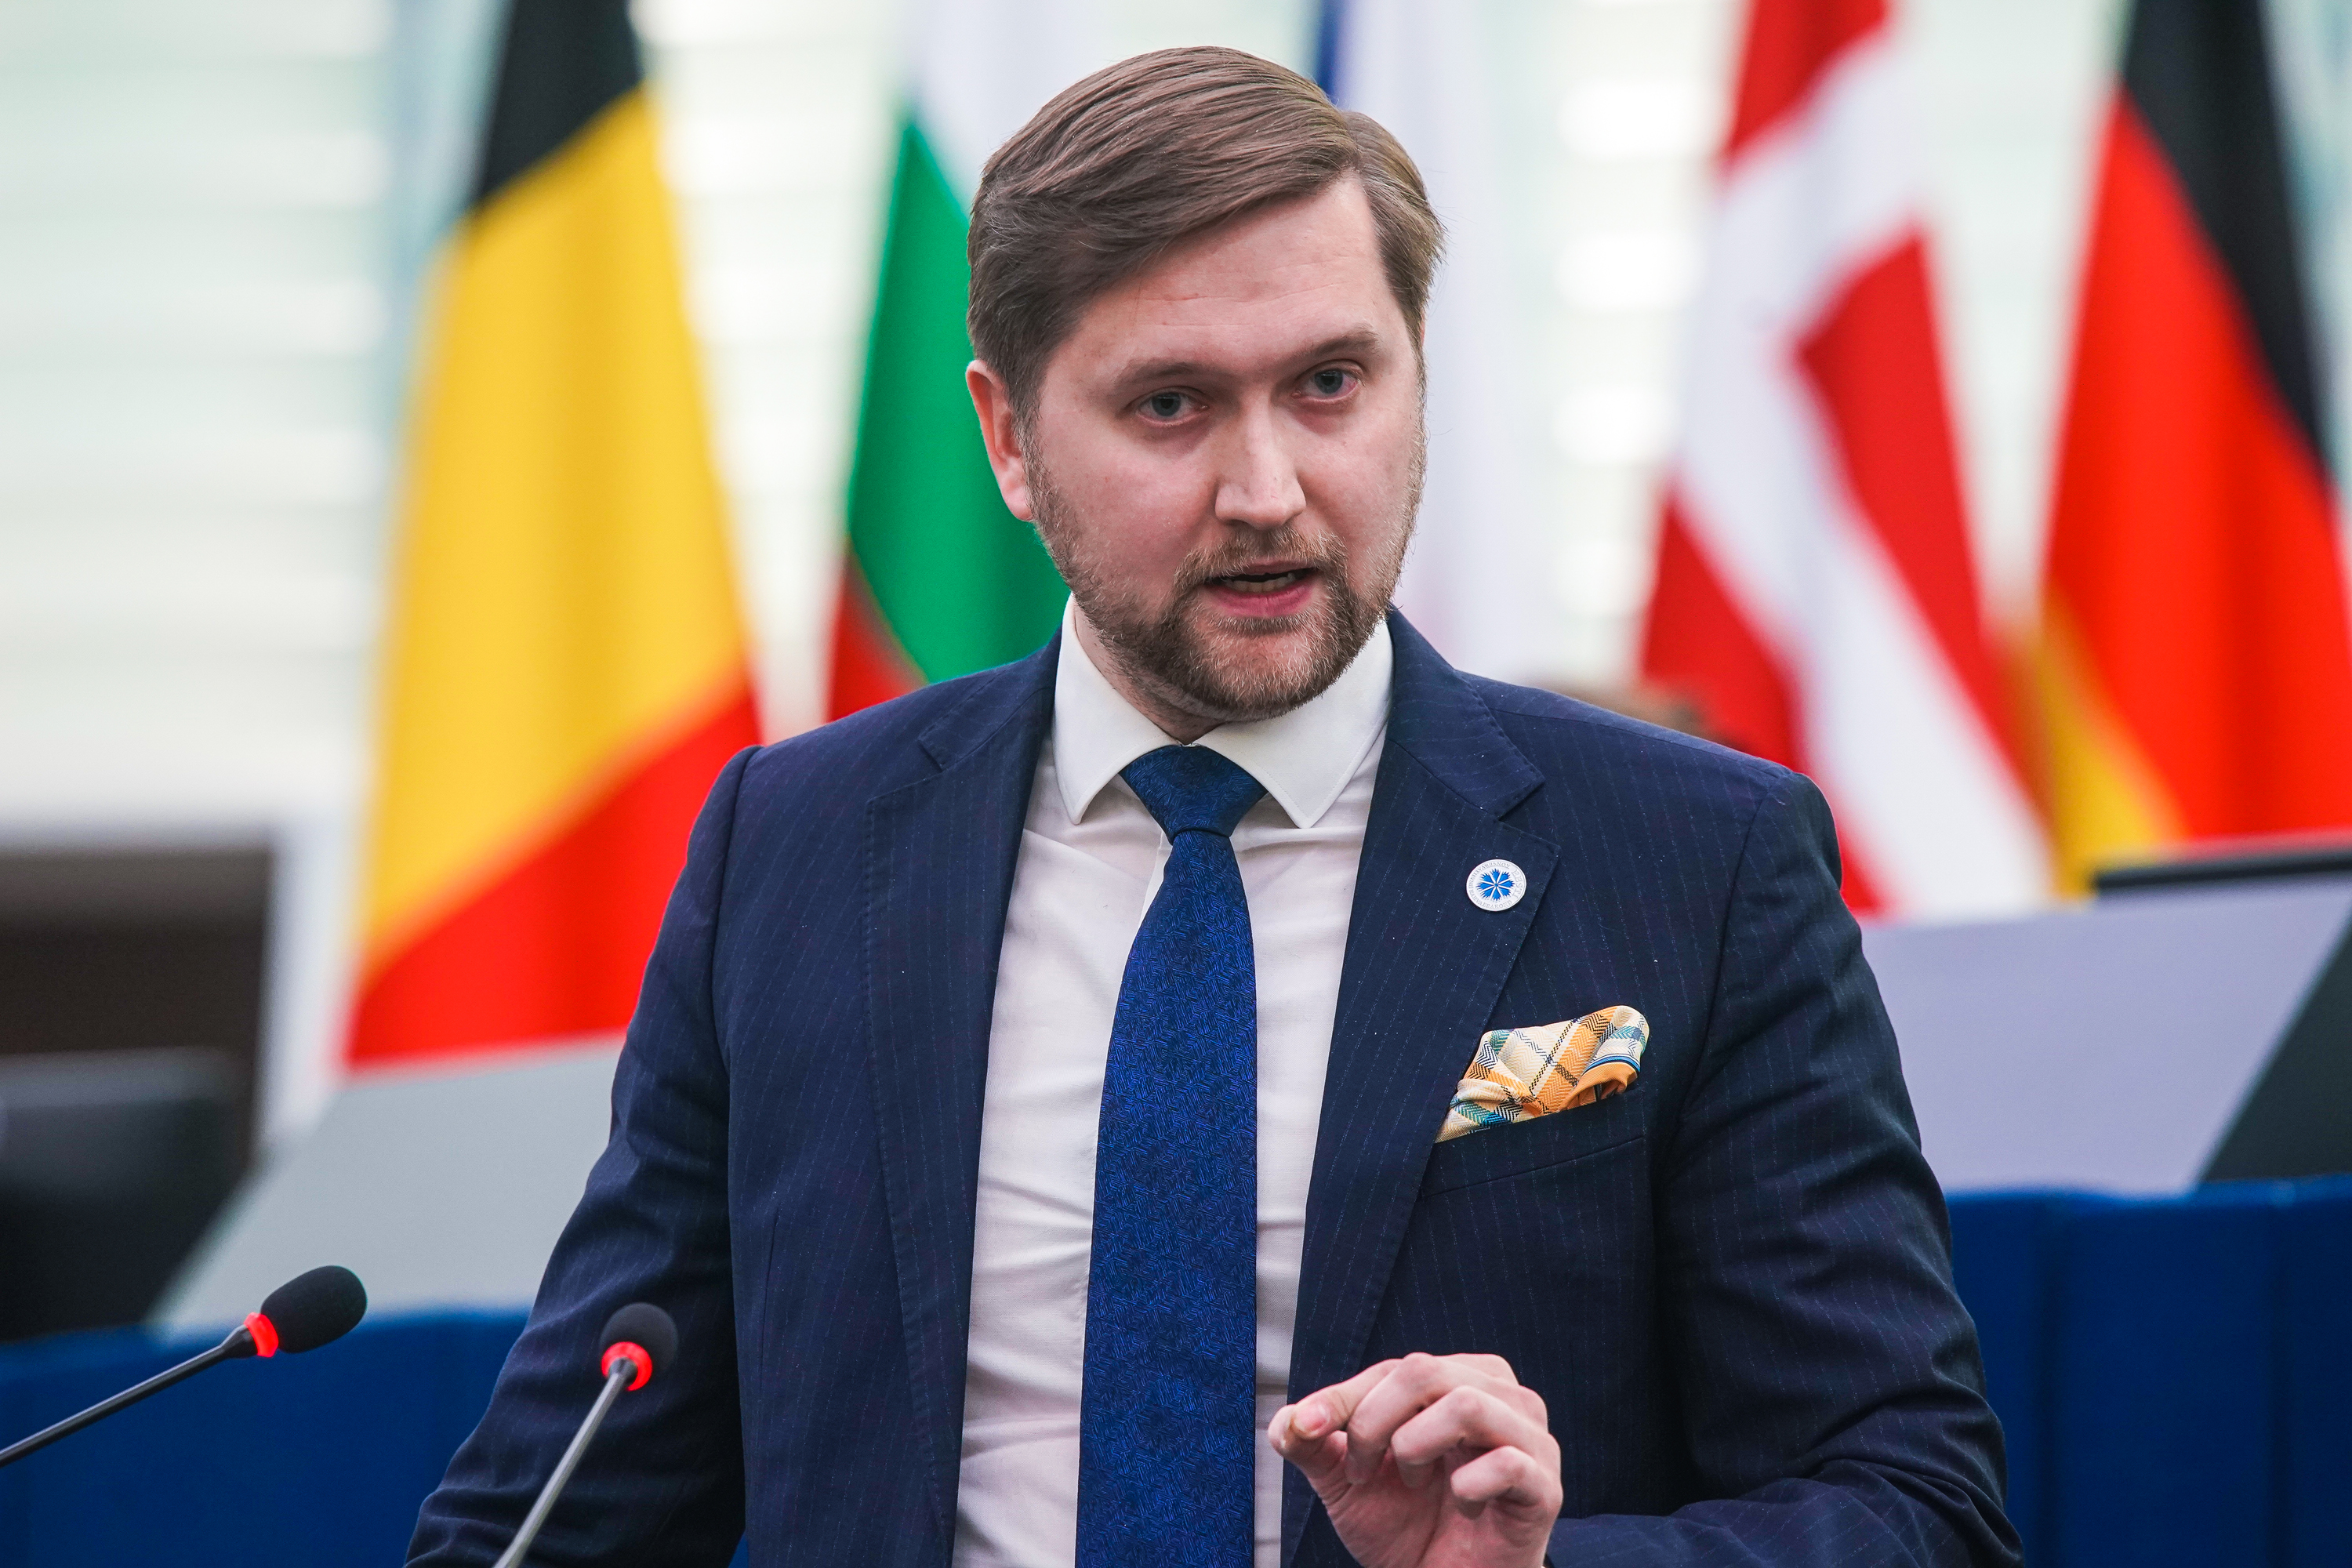 Europarlamentare estone invita Bruxelles e Kiev a non confondere le proprie illusioni di vittoria con la realtà dei fatti